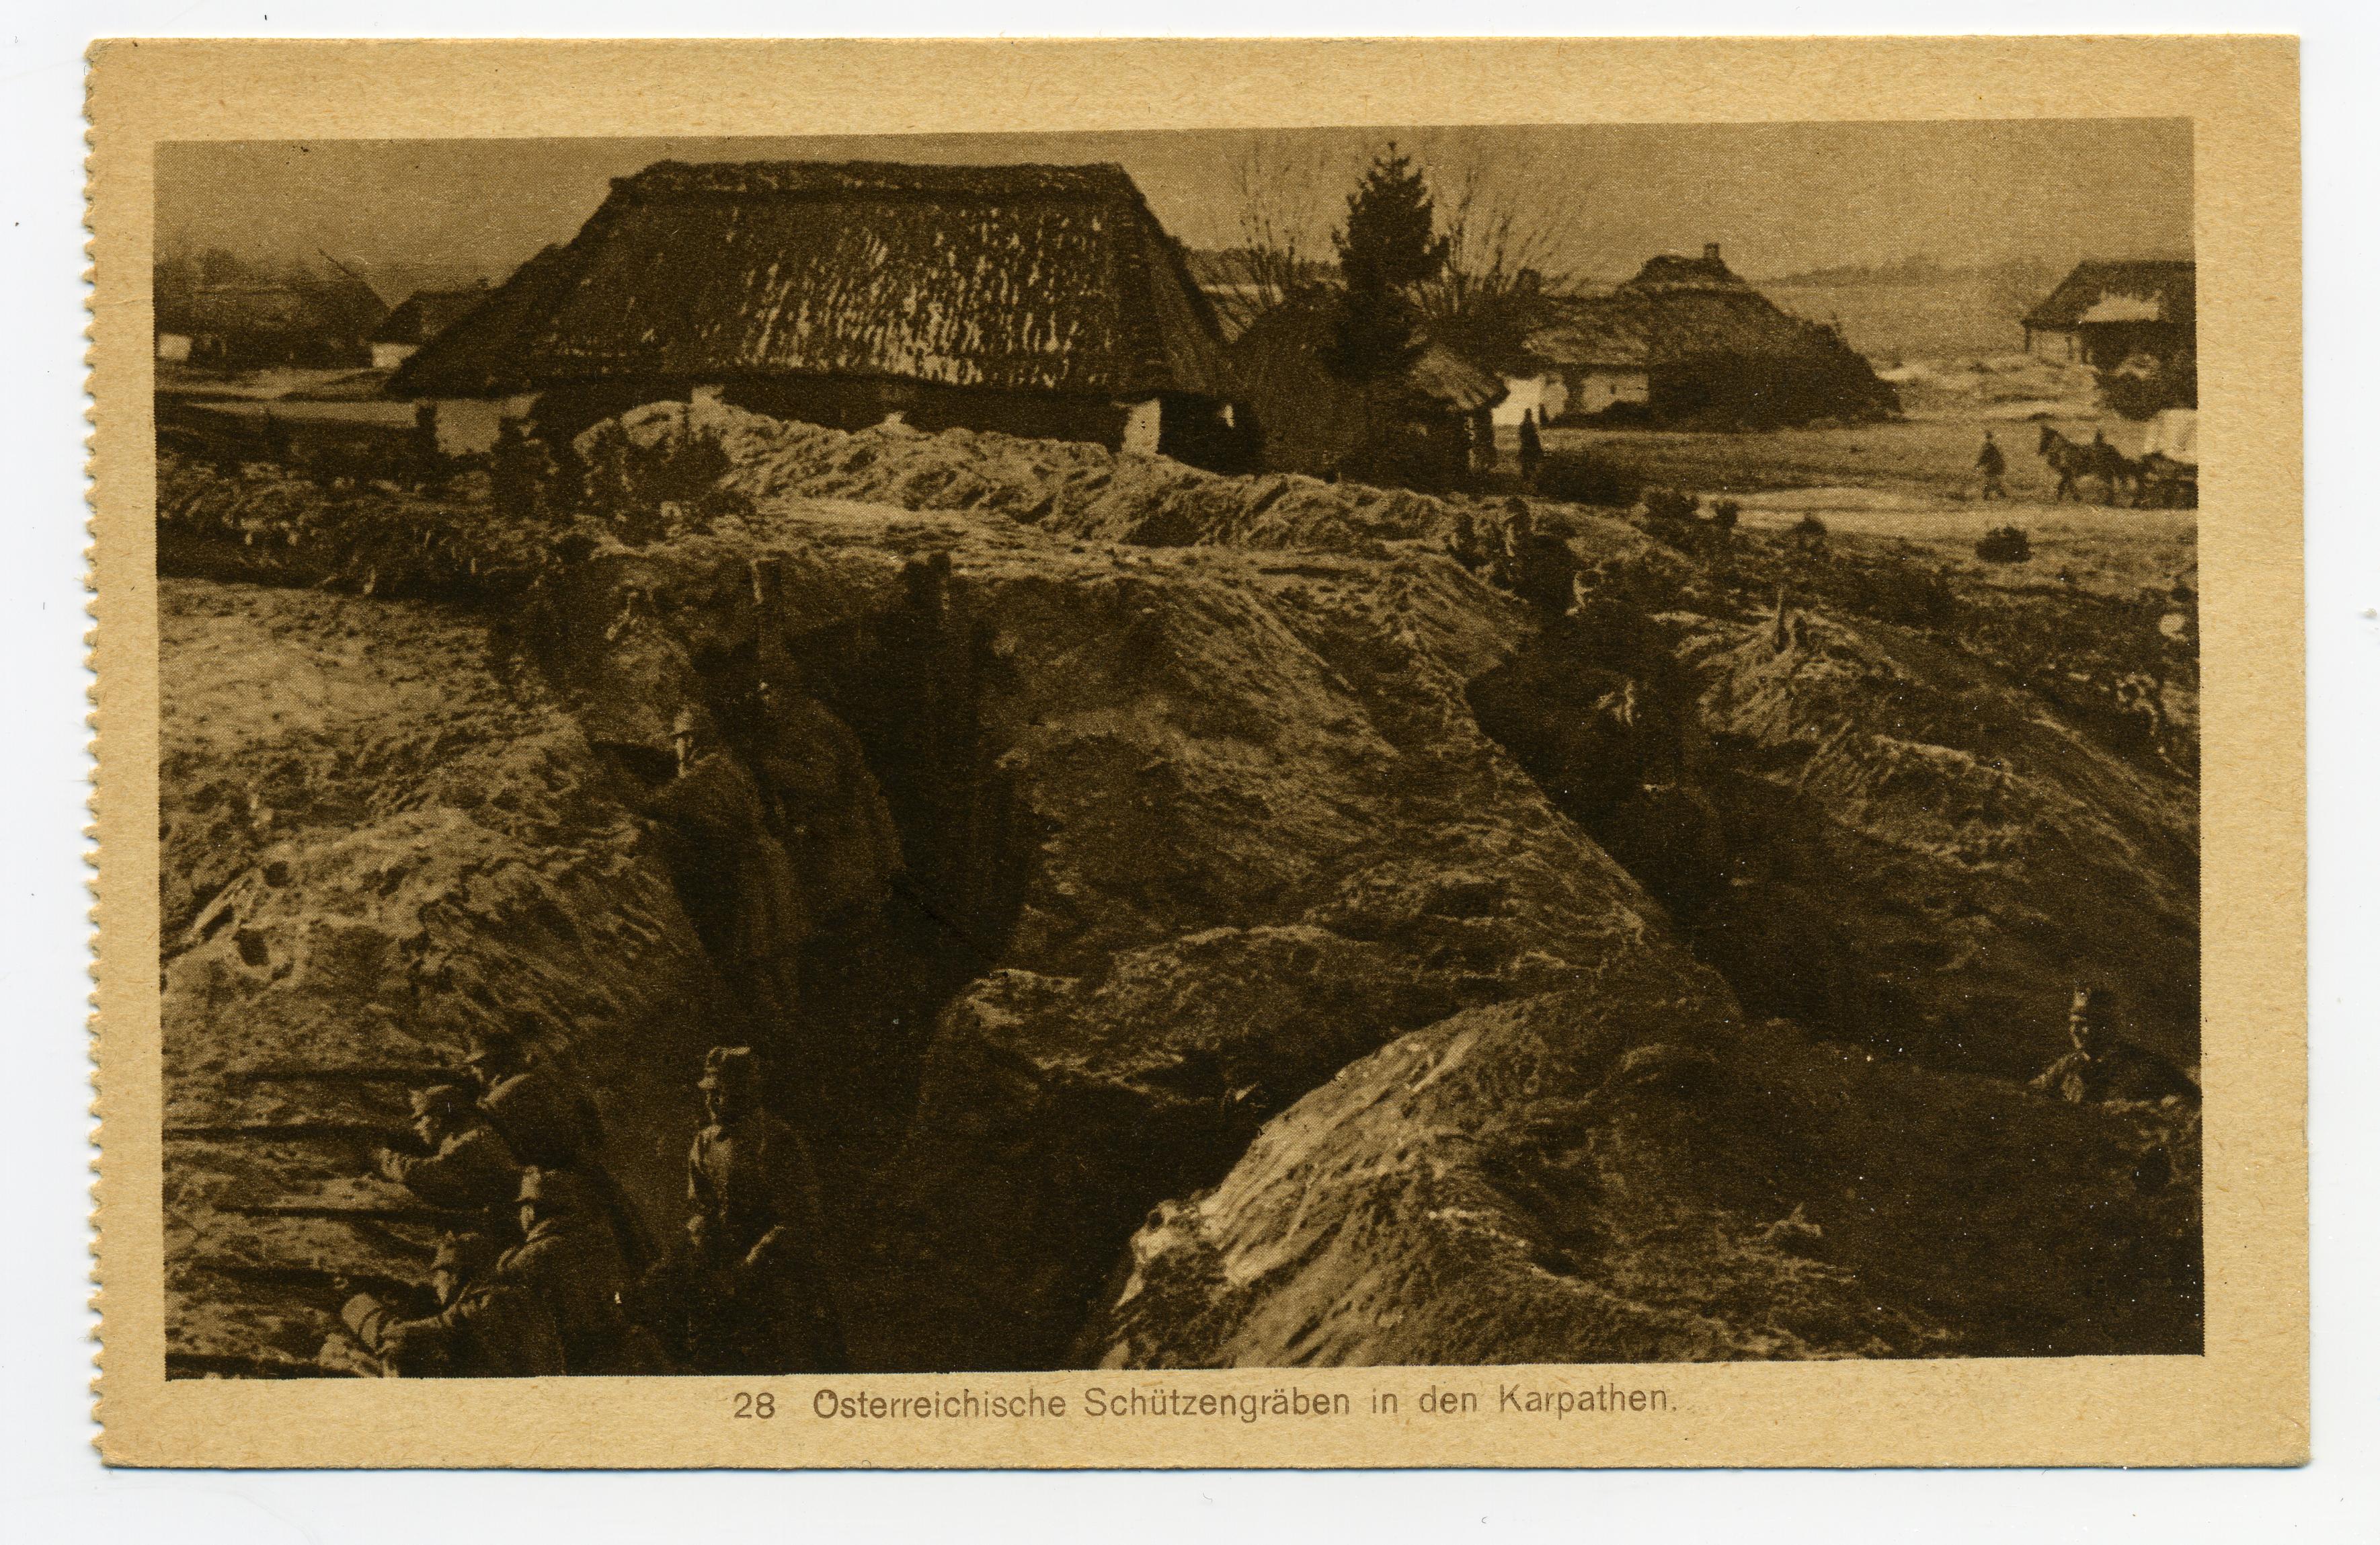 Exponat: Postkarte: Österreichische Schützengräben in den Karpaten, 1917